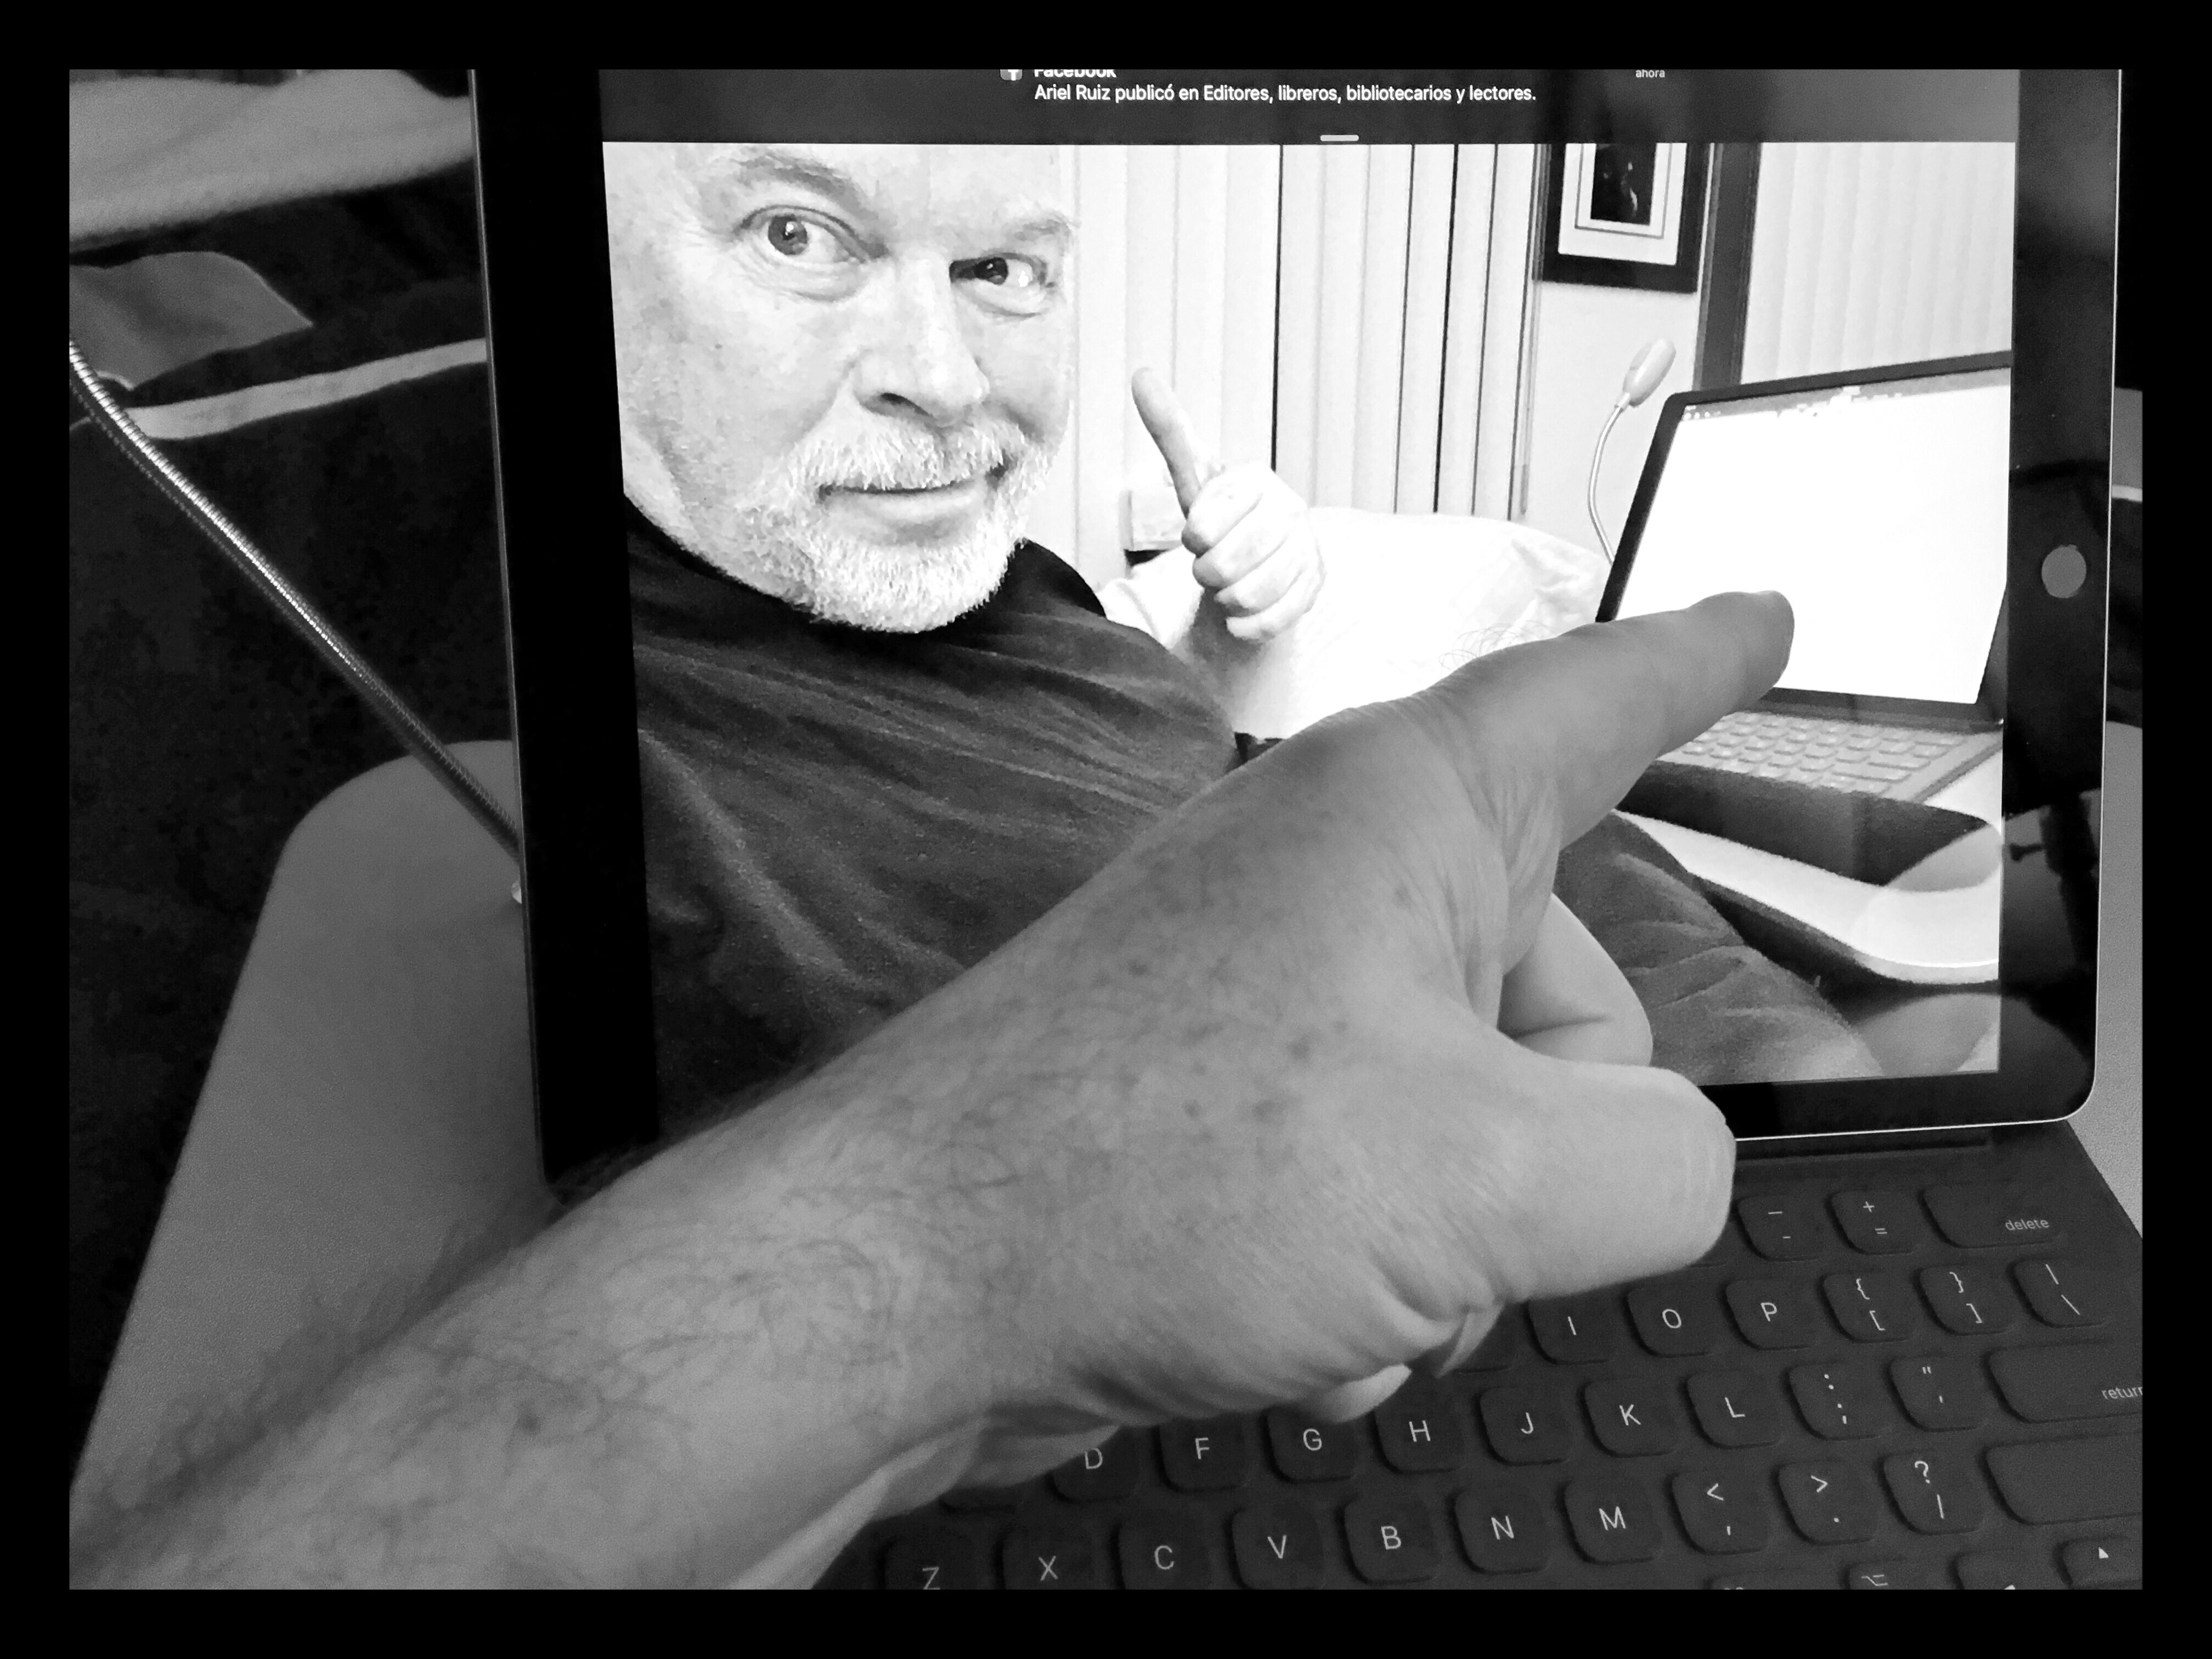 La iPad pro irrumpe en la vida de un editor